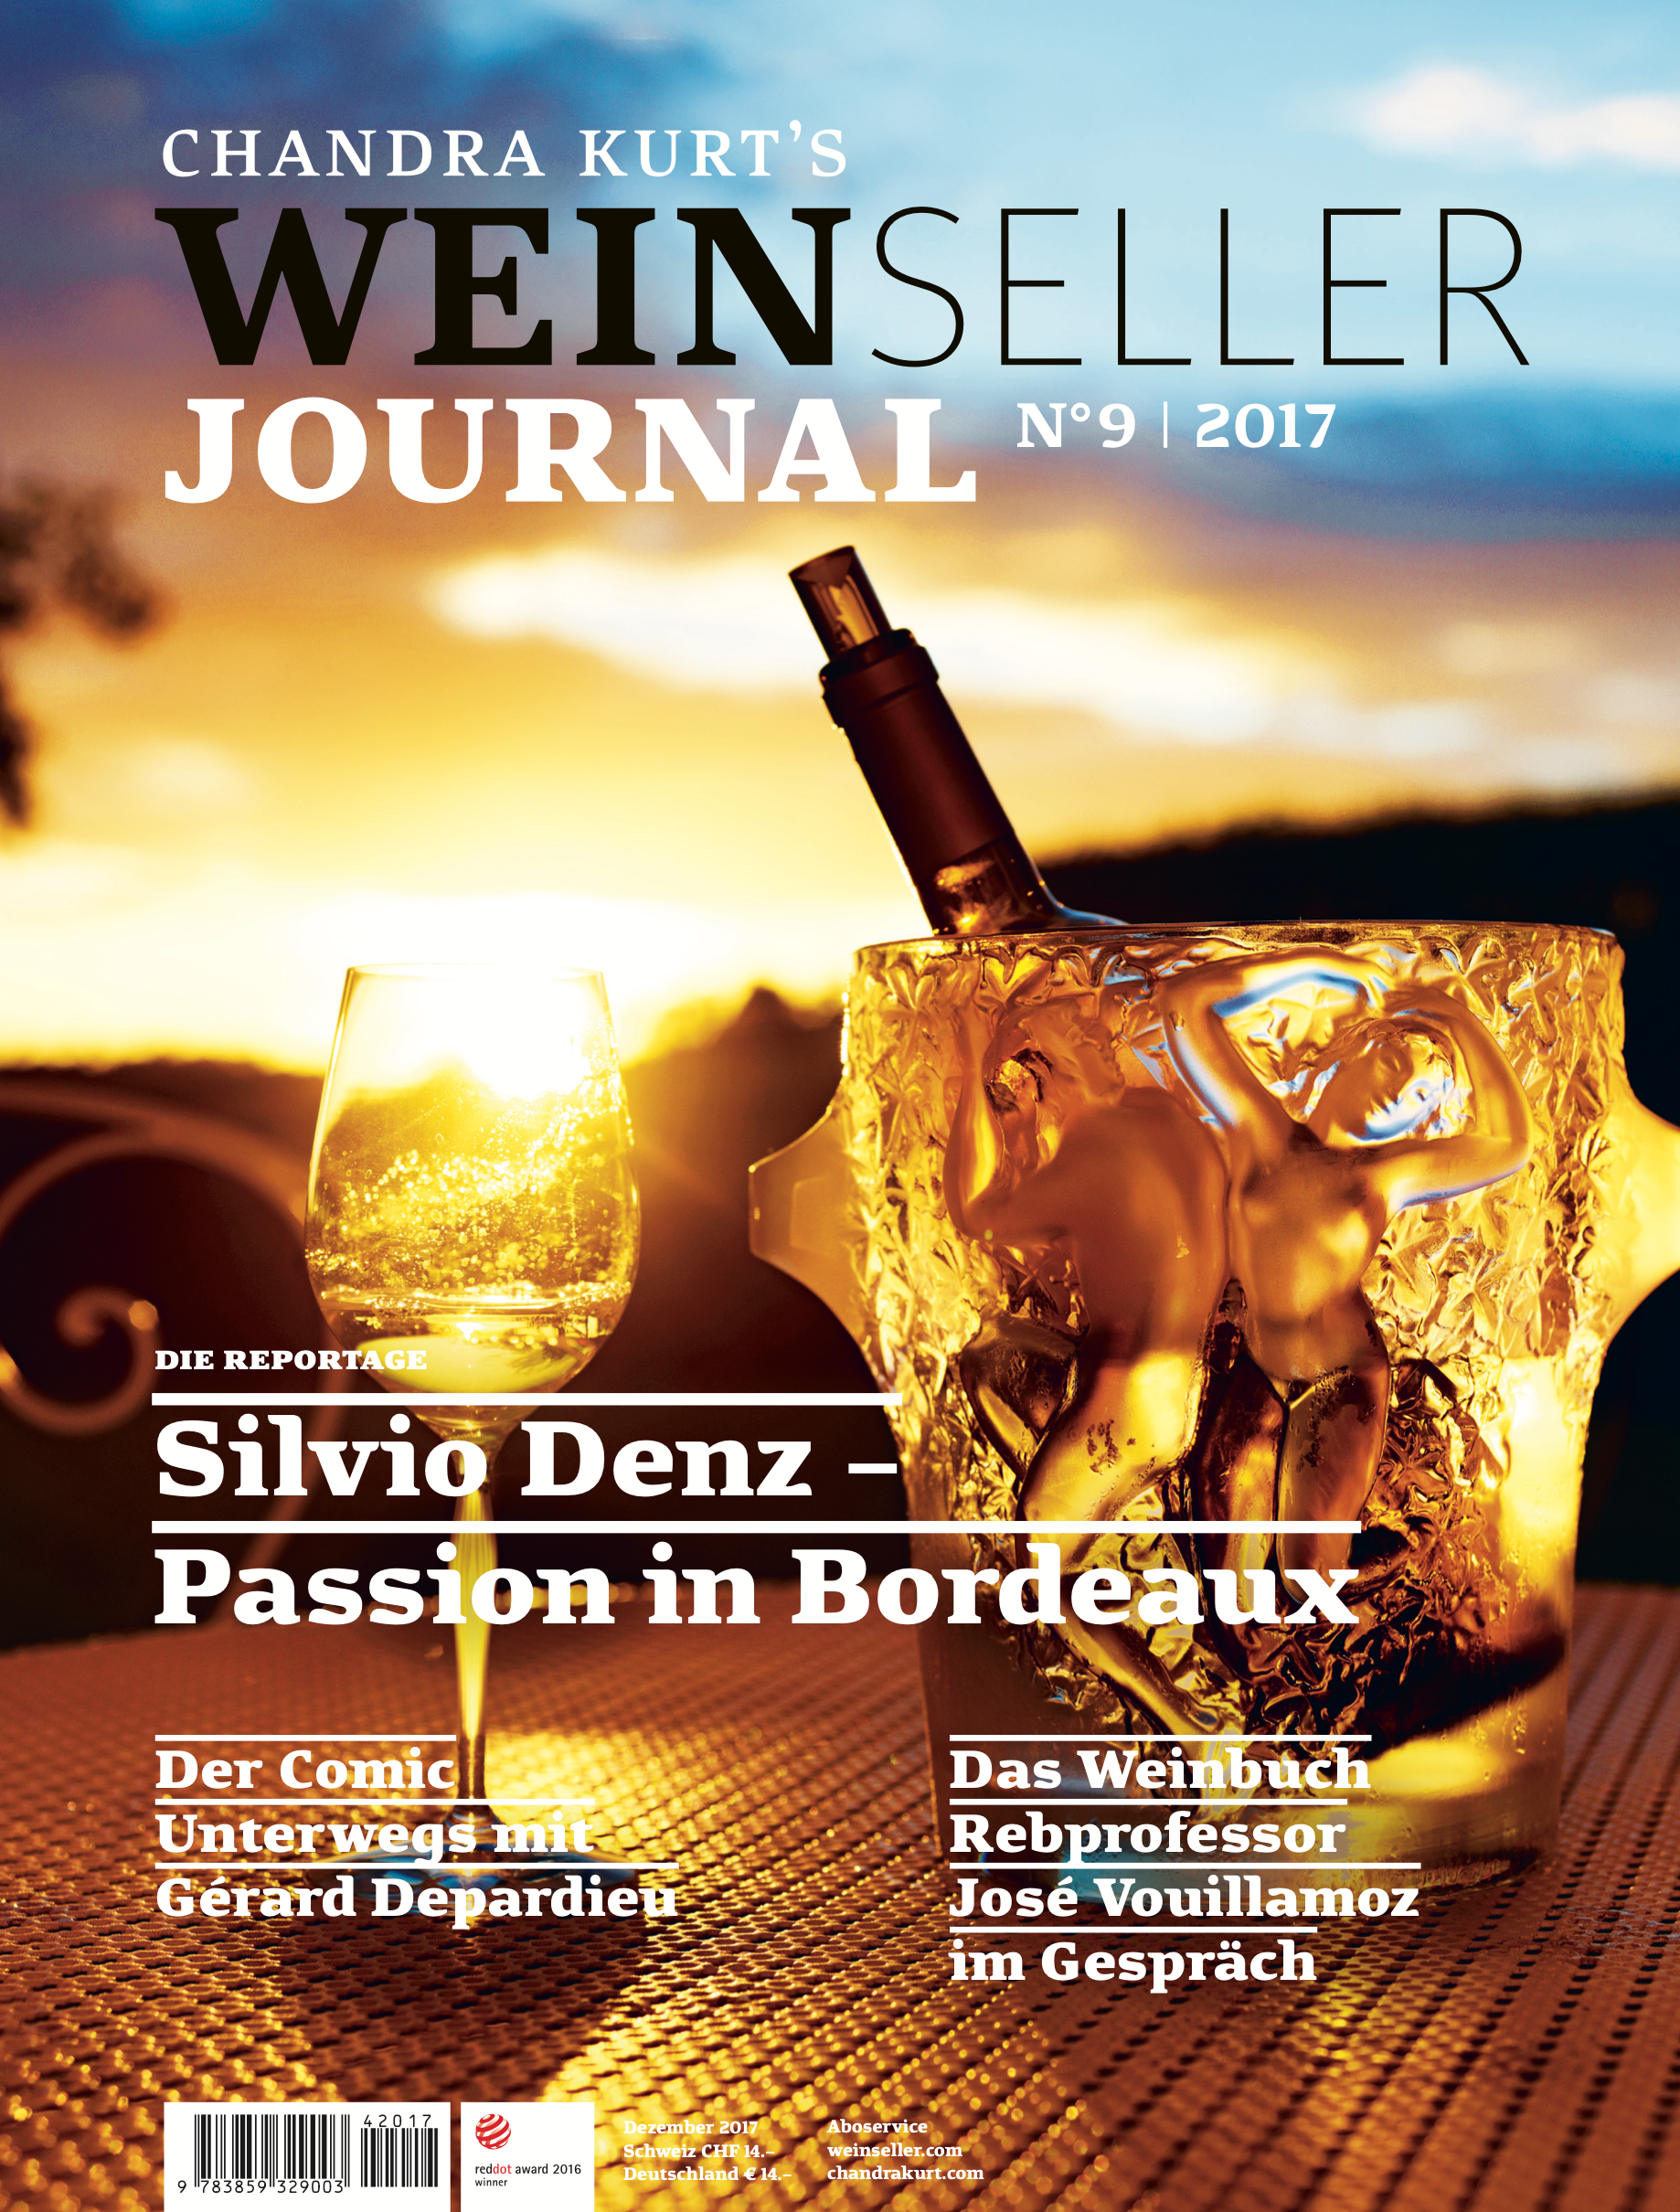 Weinseller Journal 09/17 - WEBER VERLAG